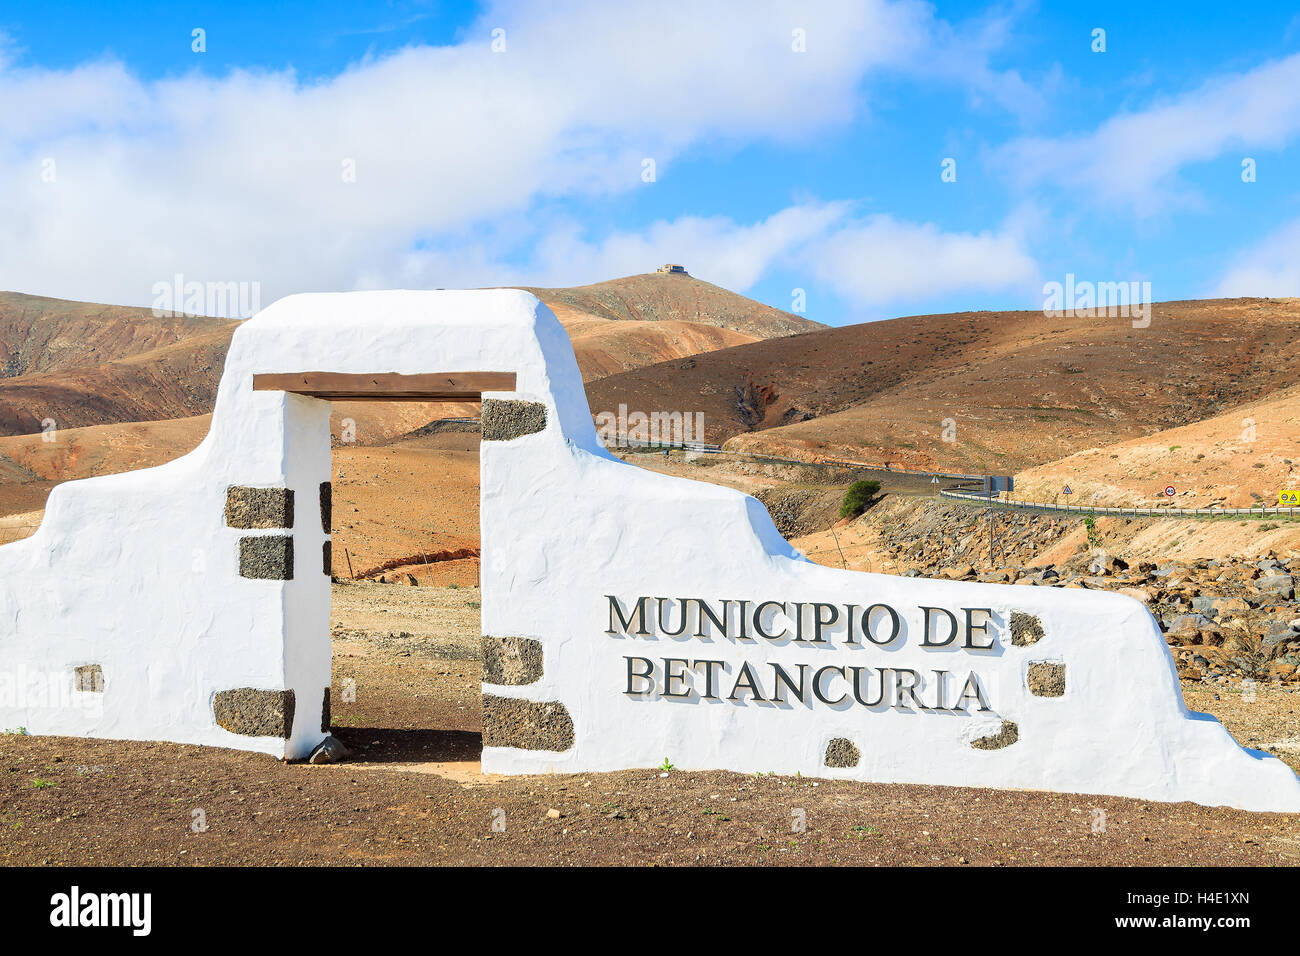 Panneau municipal typique (arche blanche porte) près de Betancuria village avec désert paysage de montagne dans l'arrière-plan, Fuerteventura, Îles Canaries, Espagne Banque D'Images